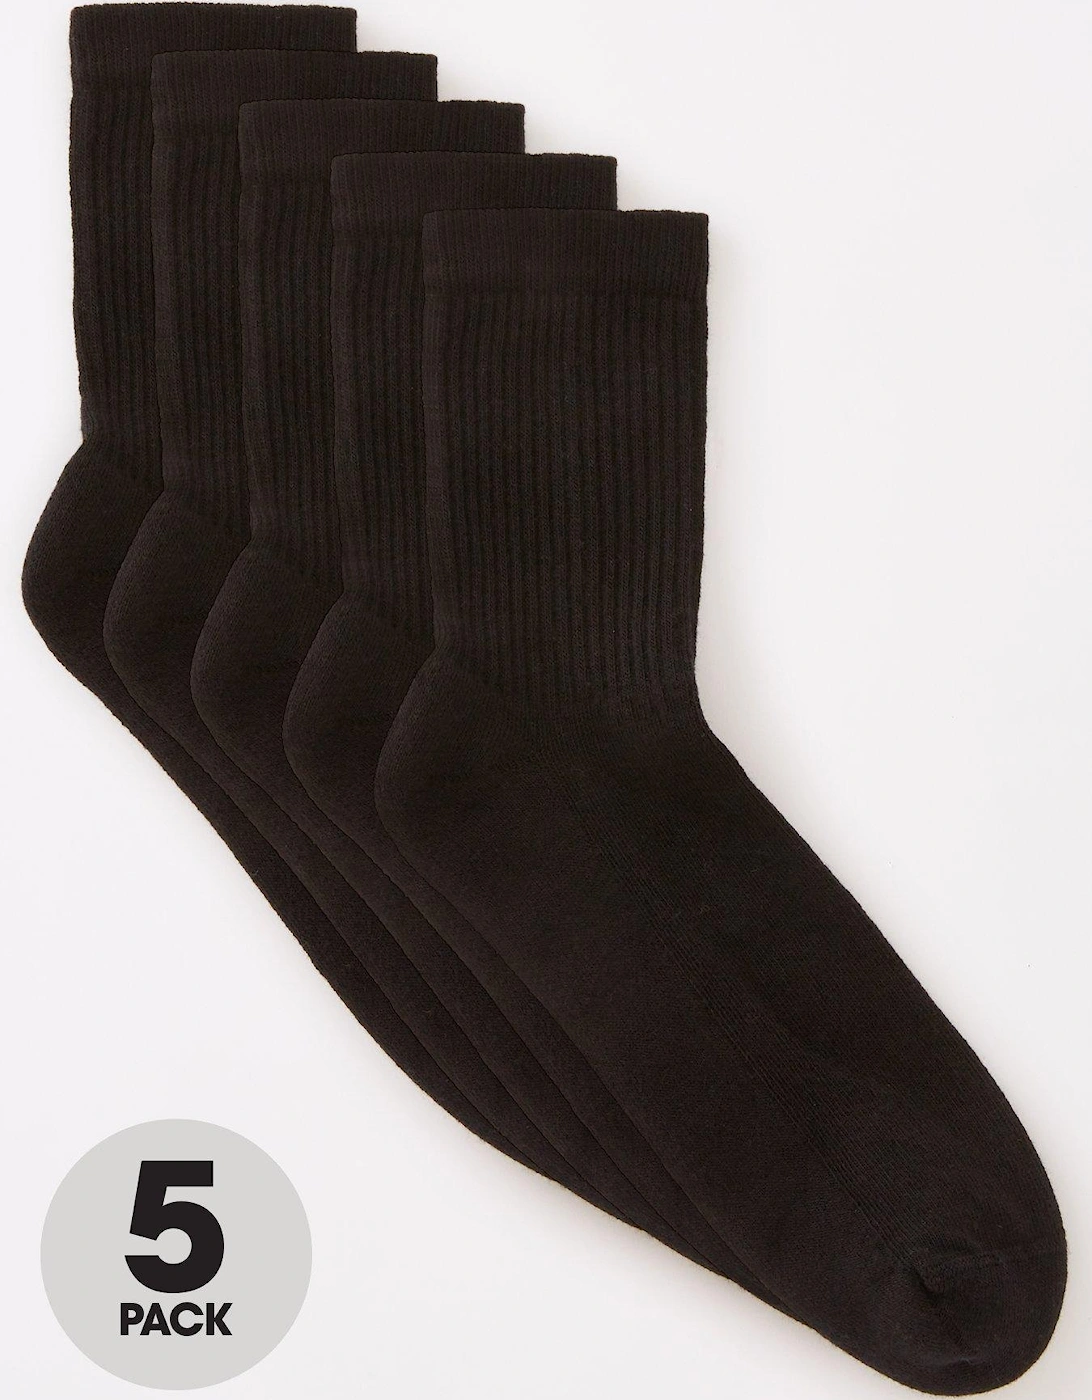 Unisex 5 Pack Black Sports Socks, 2 of 1